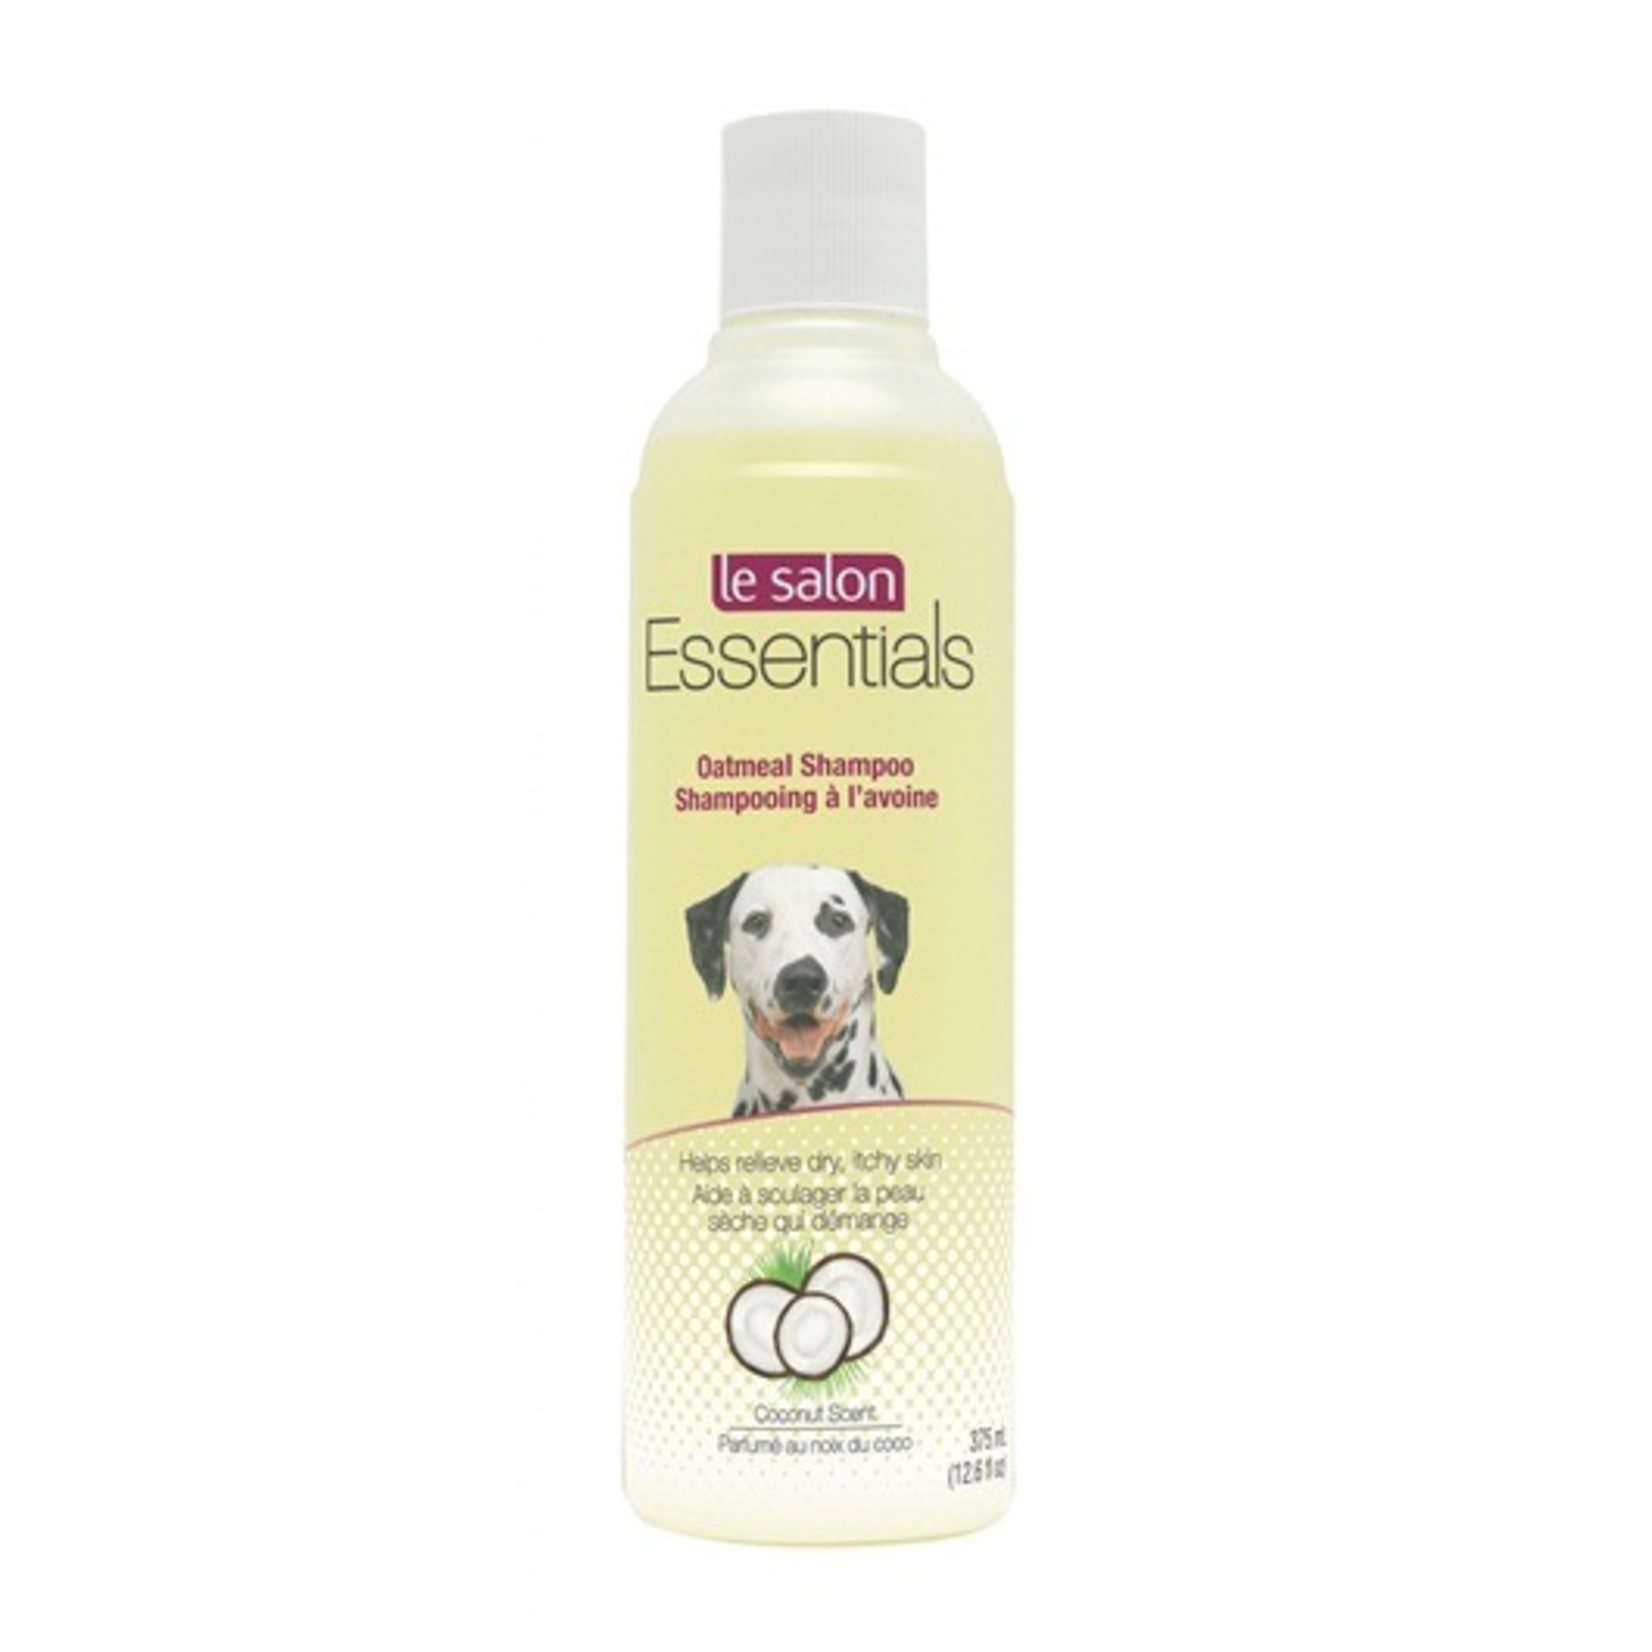 LE SALON Le Salon Essentials Oatmeal Shampoo 375mL